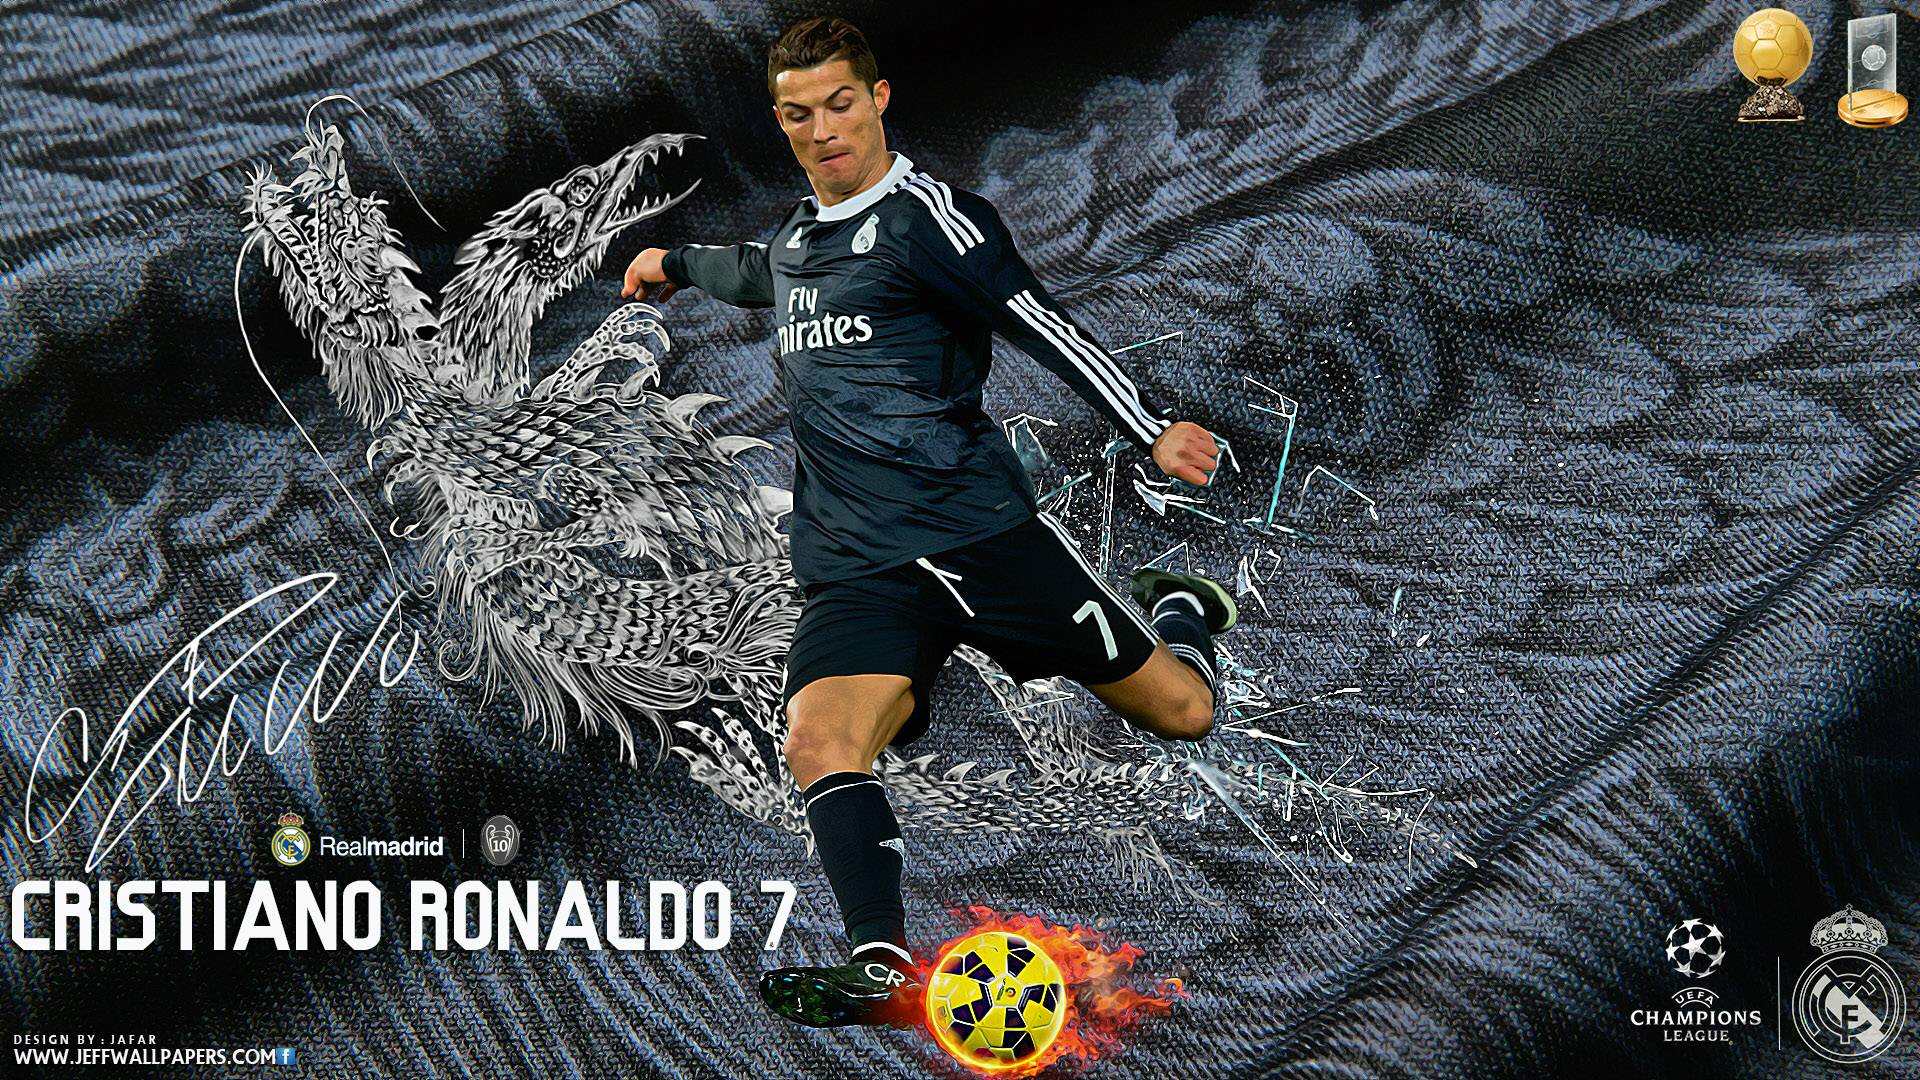 Cristiano Ronaldo Wallpaper, High Quality Pics of Cristiano